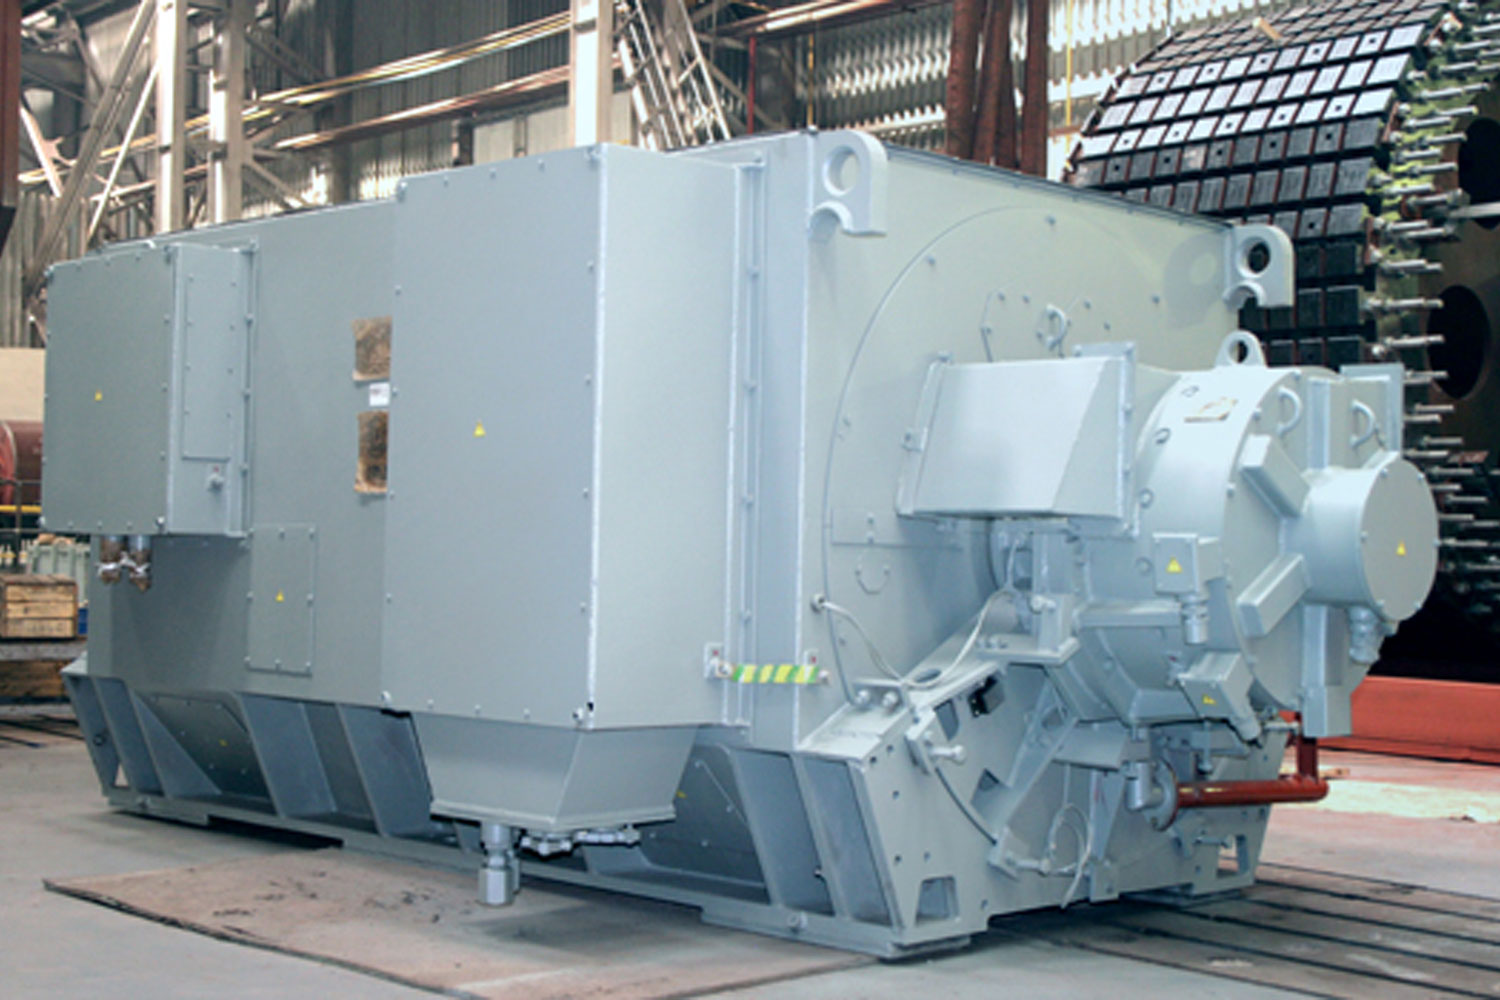 TK series turbine generators, 1.5-6 MW